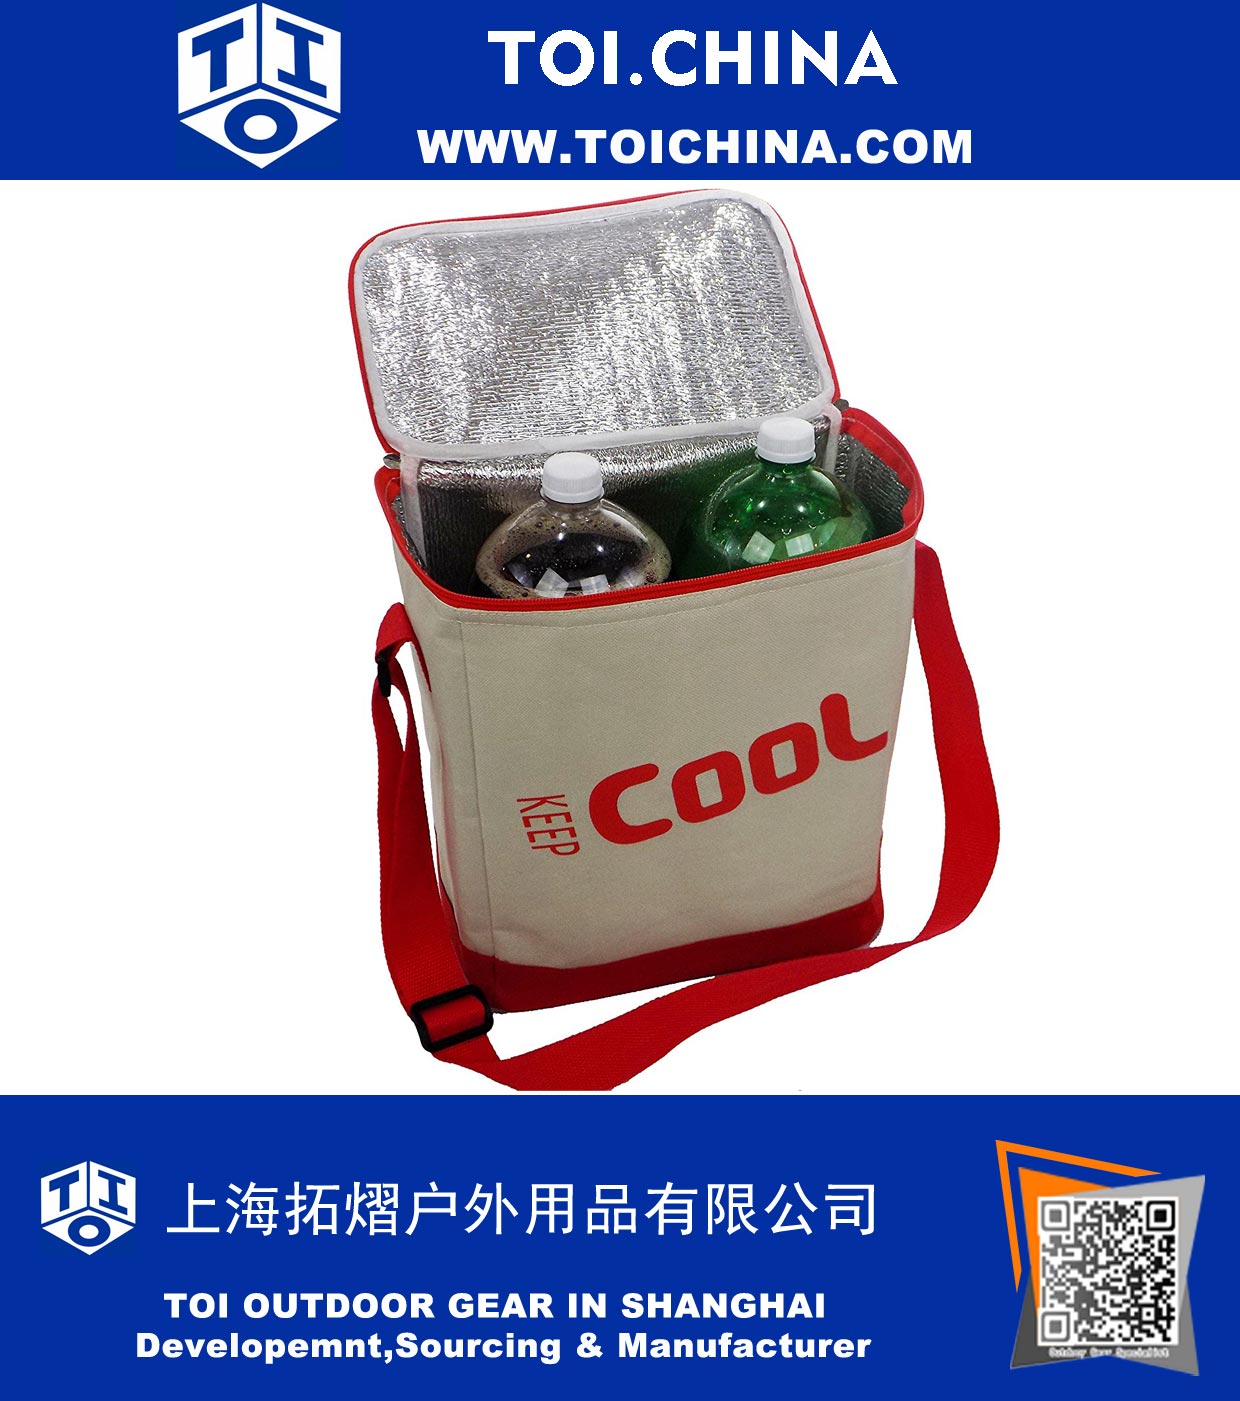 Bolsa Soft Cooler com Revestimento Térmico em Alumínio e Alça Ajustável, Vermelho e Branco